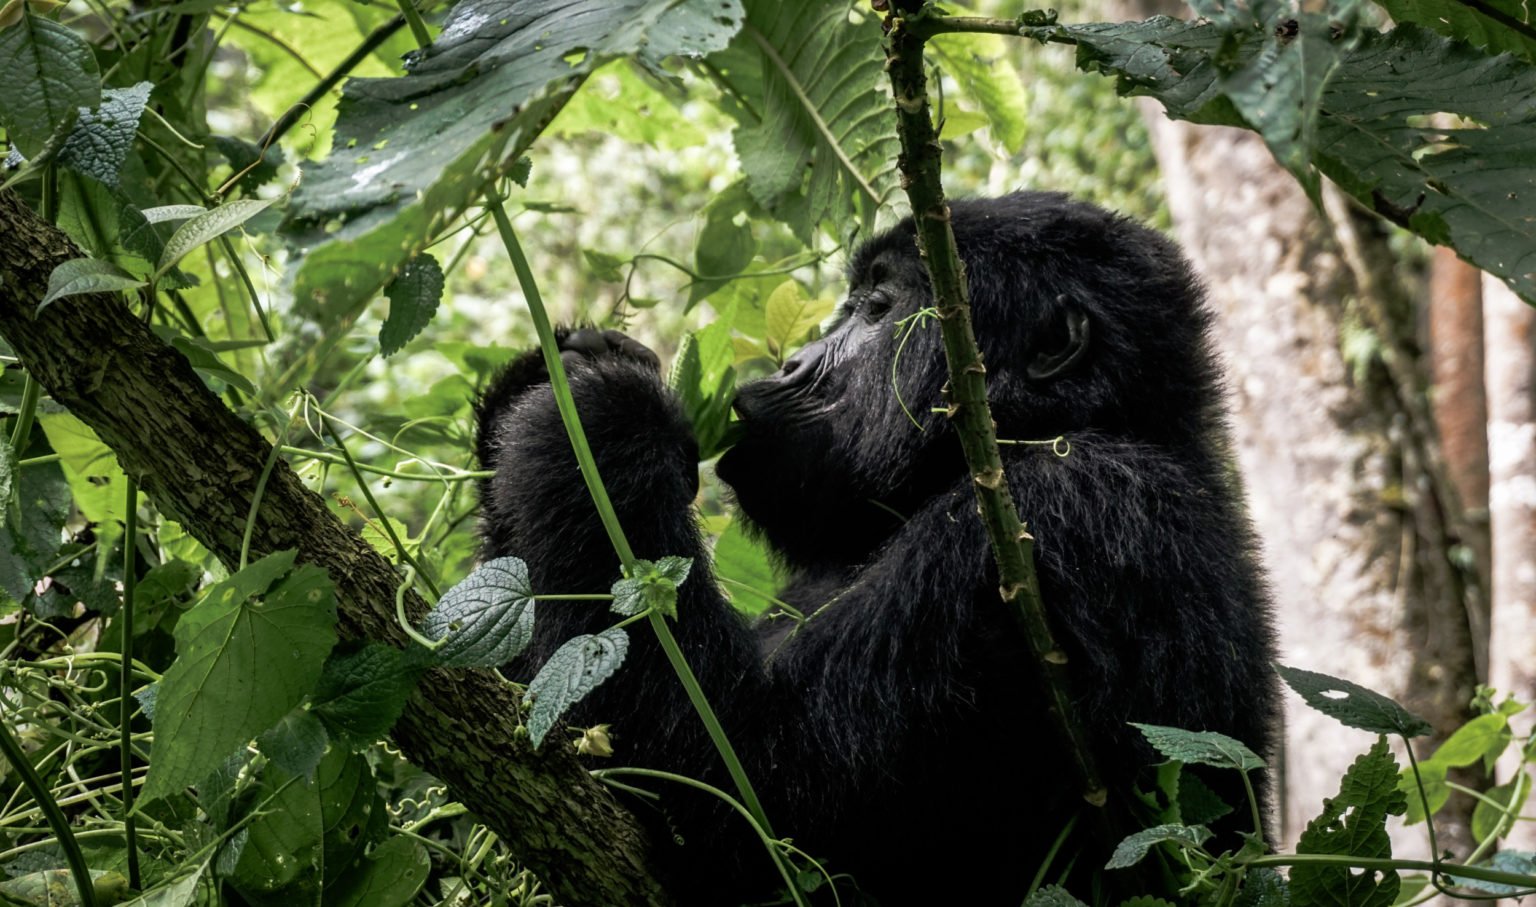 gorilla rwanda